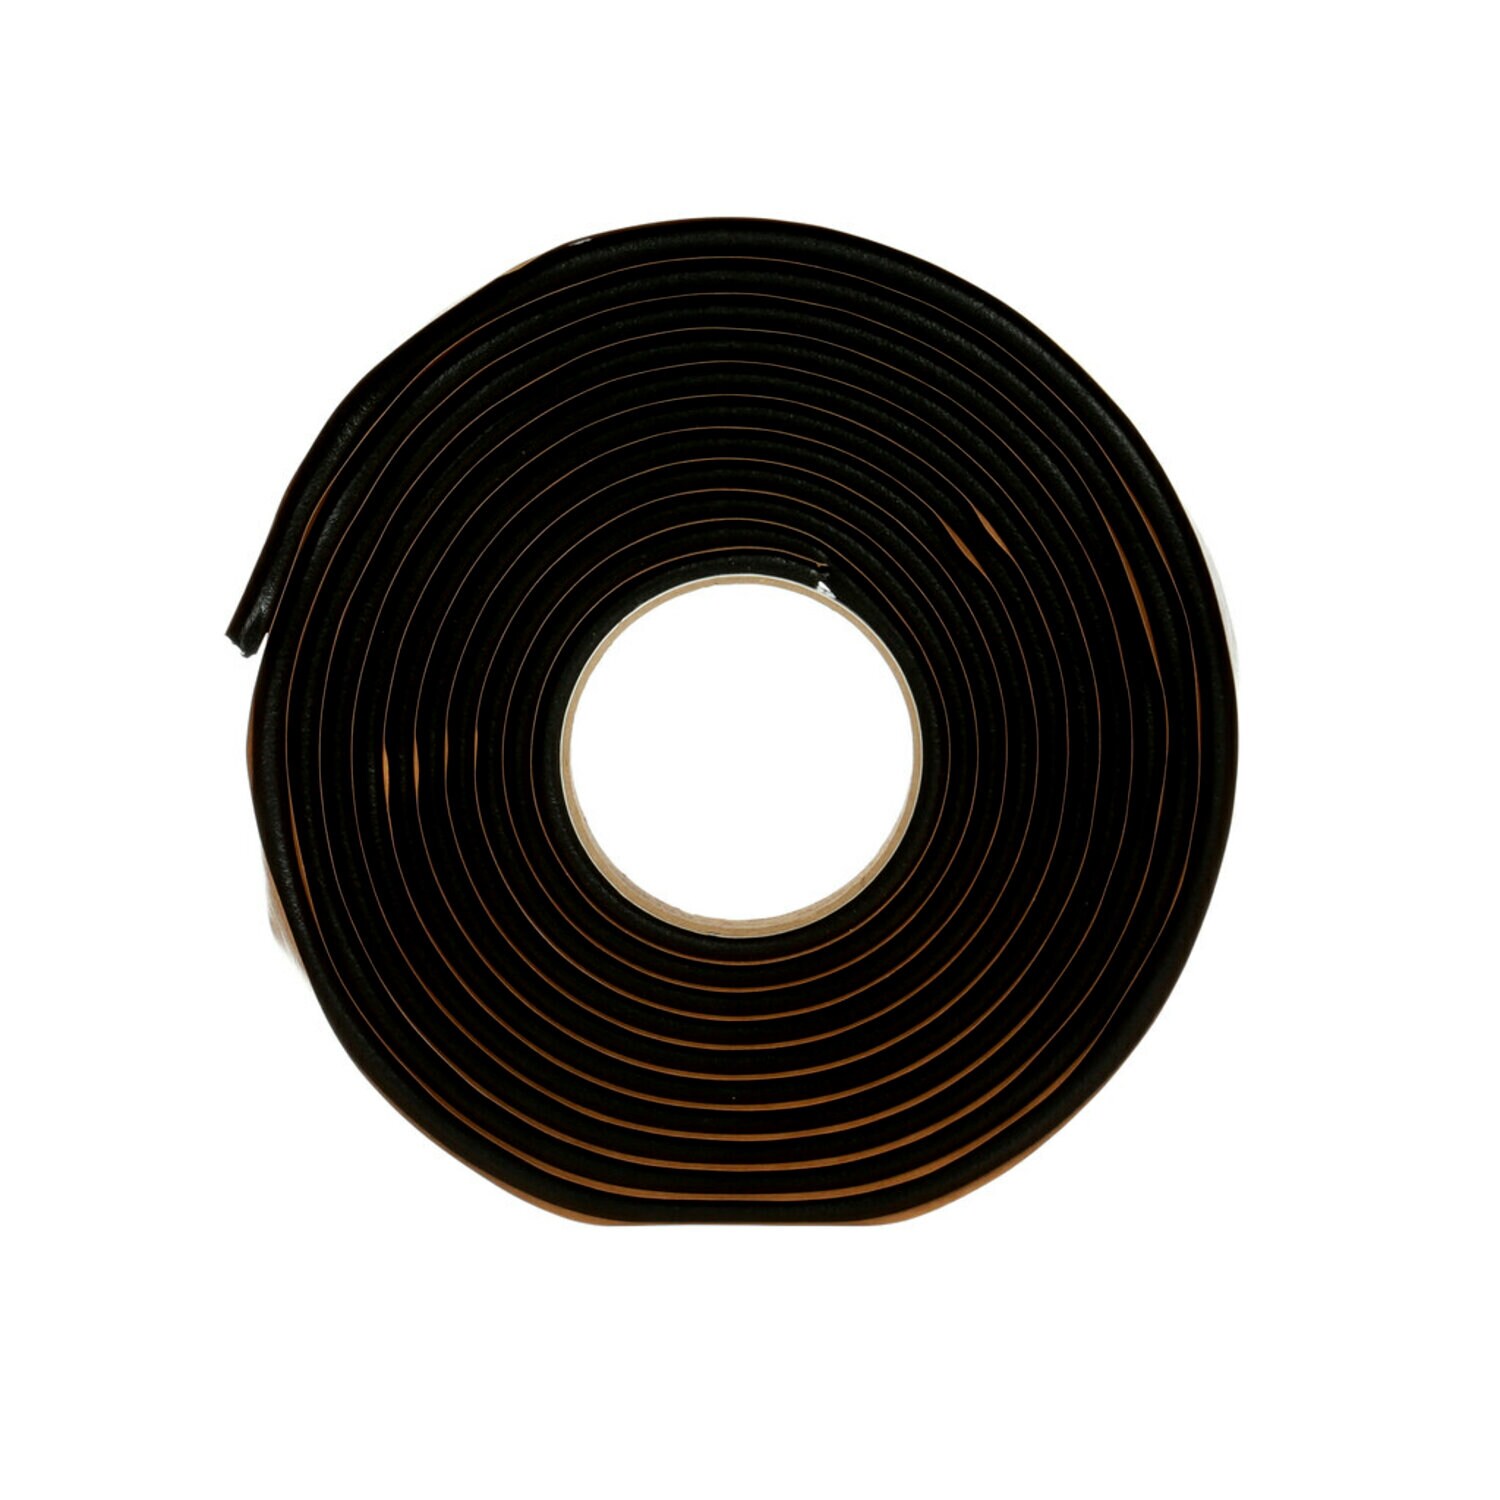 7000046615 - 3M Windo-Weld Round Ribbon Sealer, 08611, 5/16 in x 15 ft Kit, 12 per
case